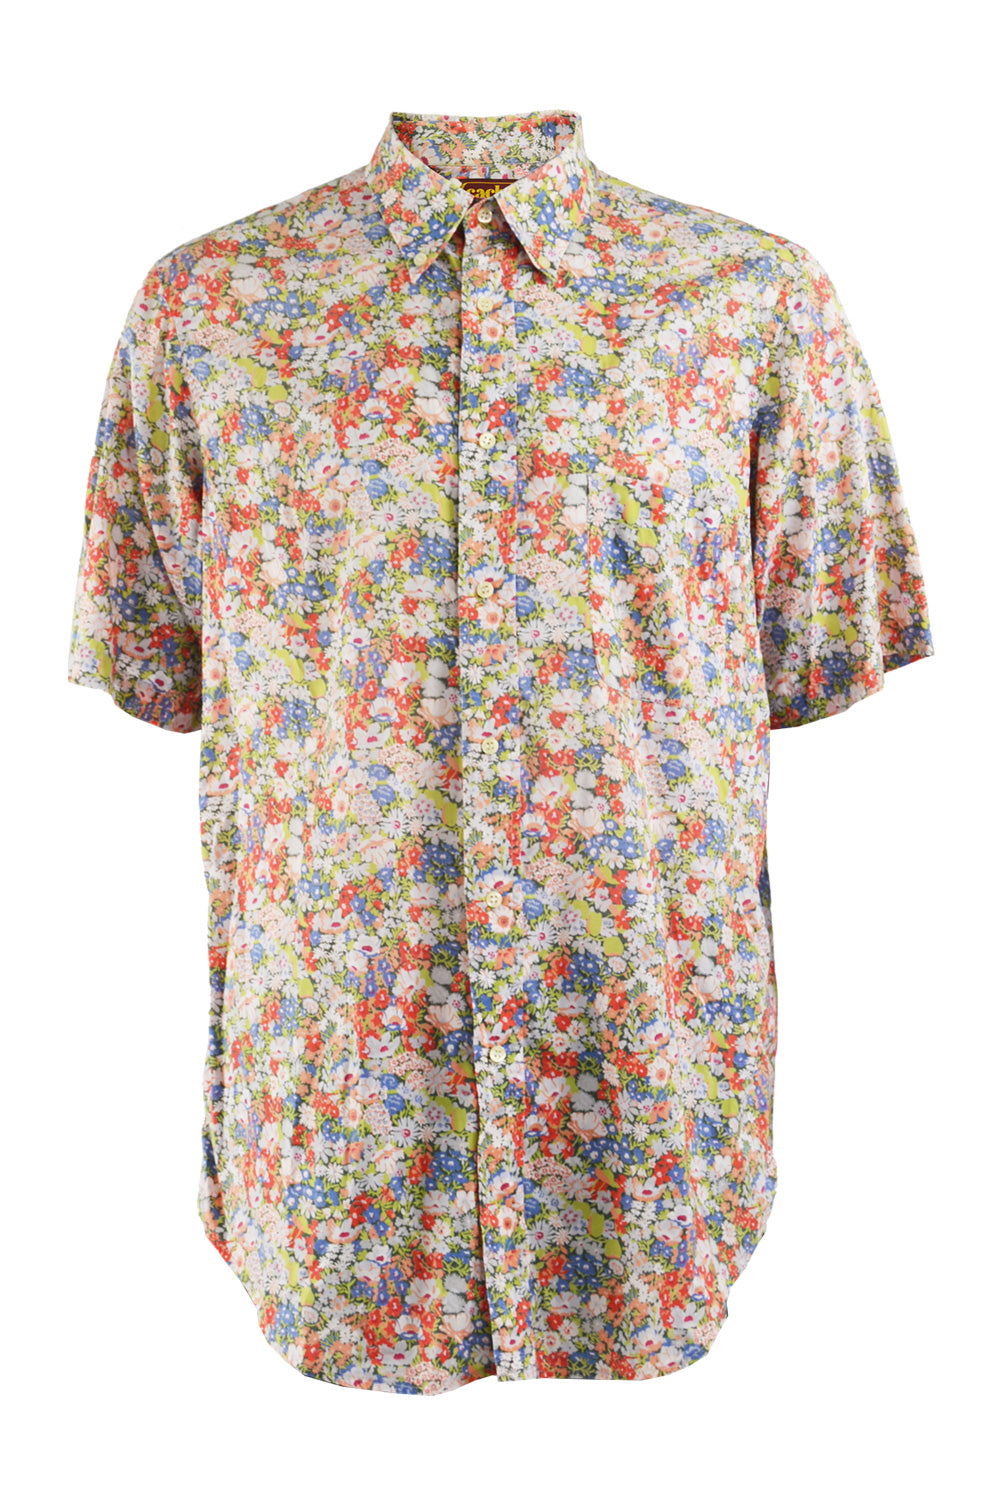 Mens Vintage Floral Print Cotton Shirt, 1980s